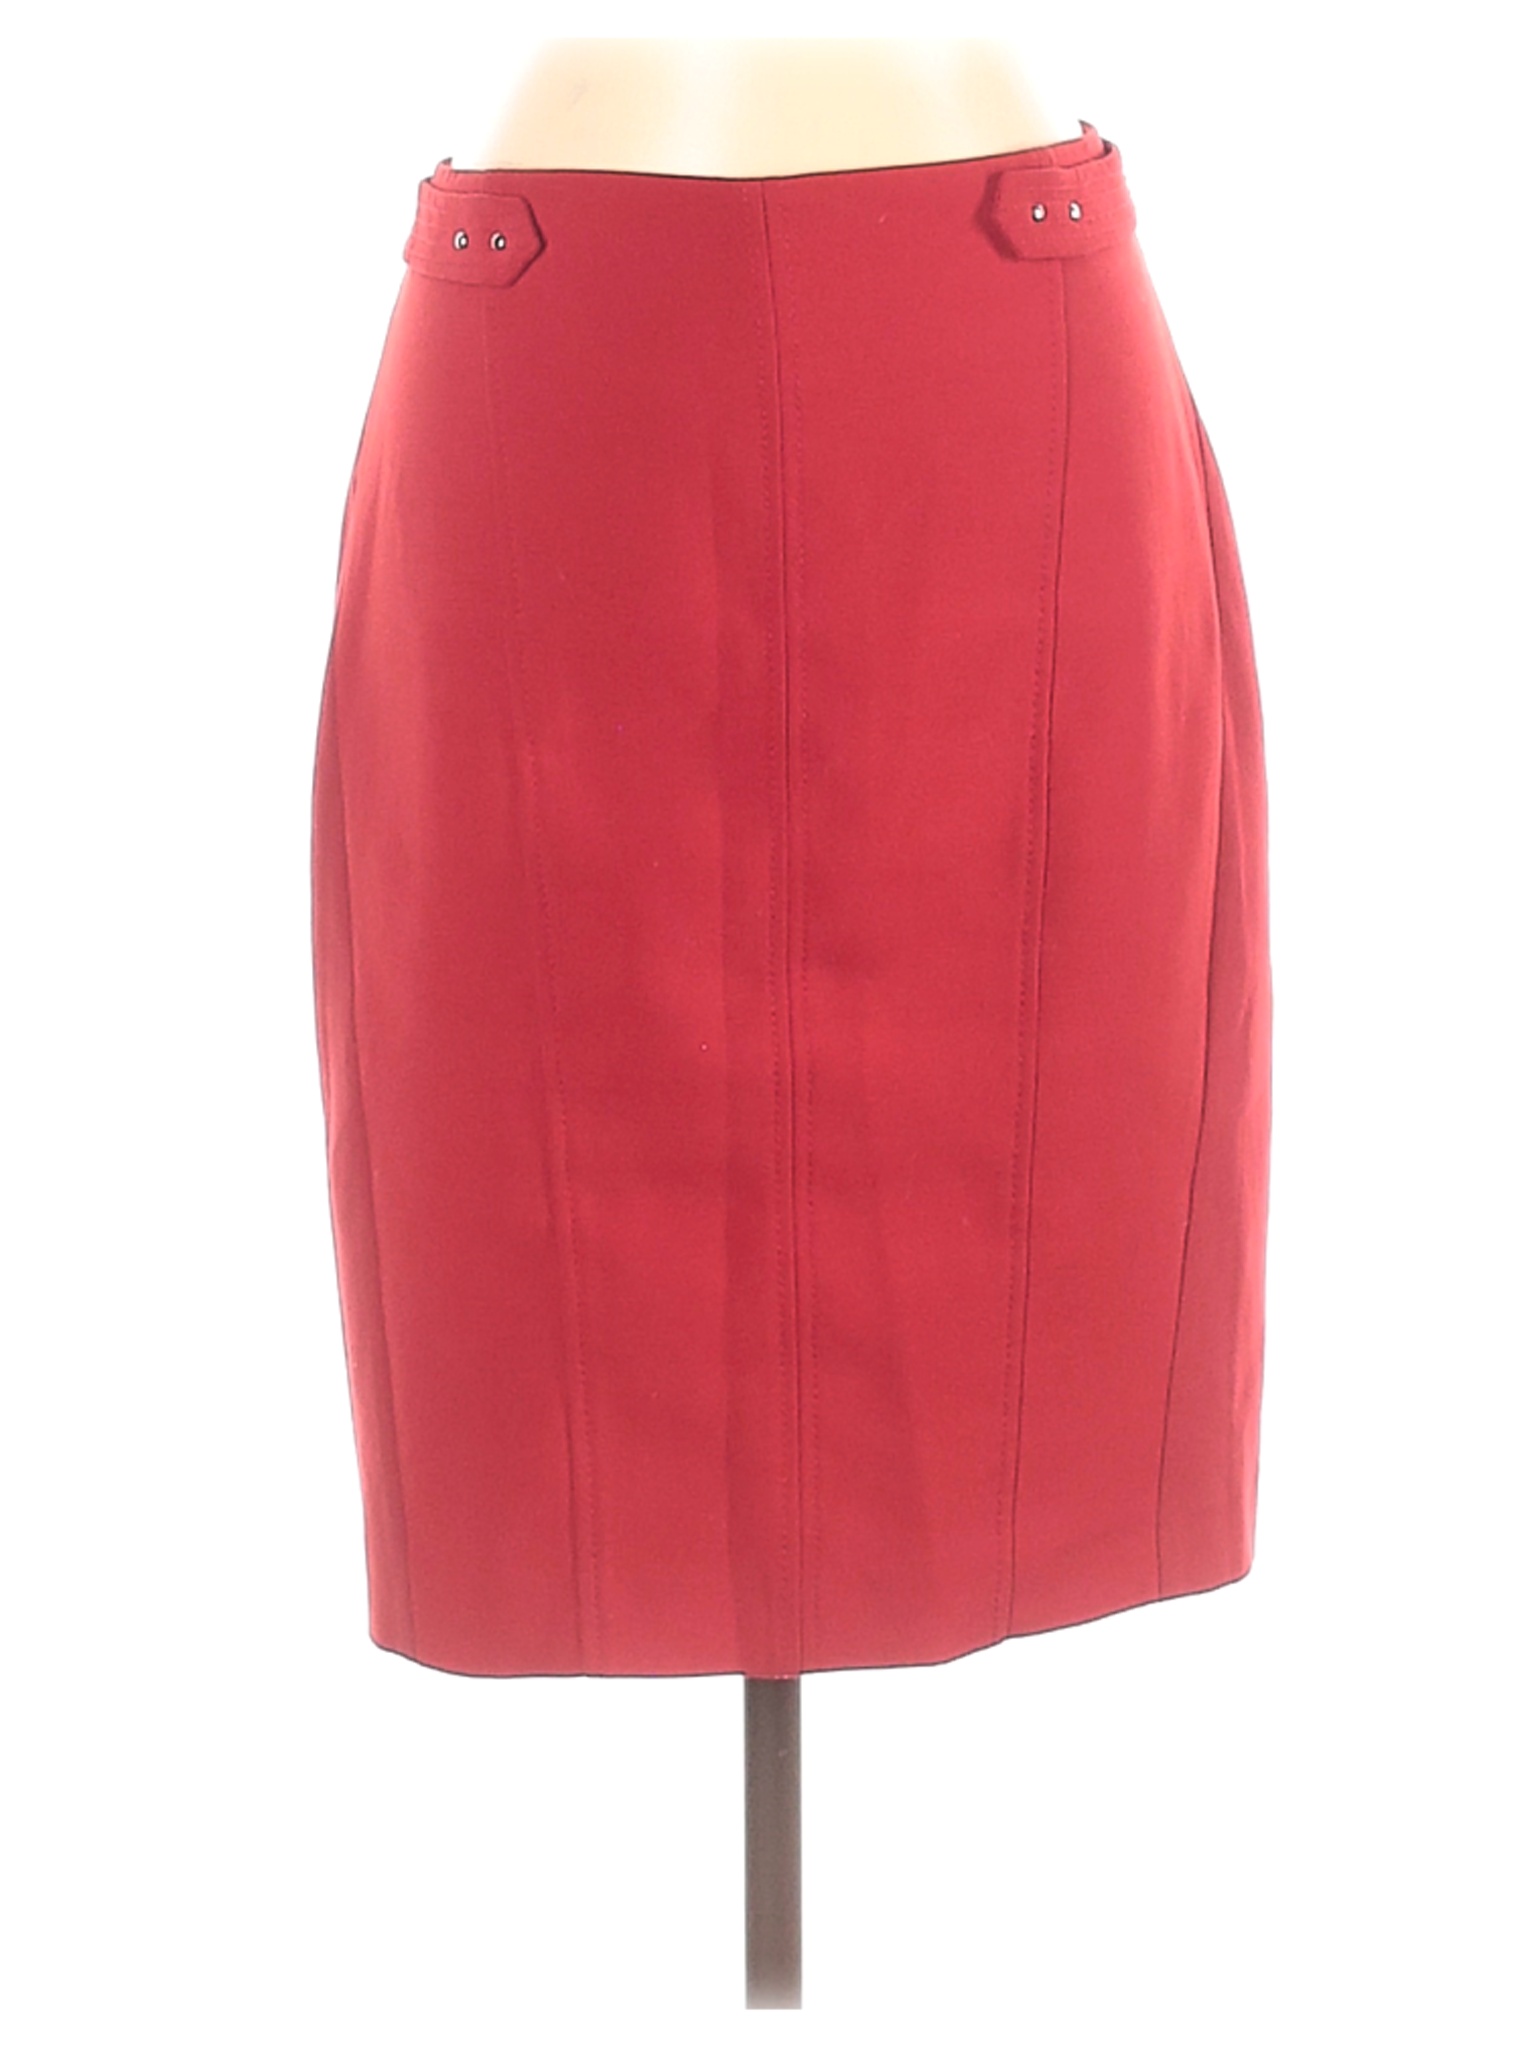 White House Black Market Women Red Casual Skirt 2 | eBay